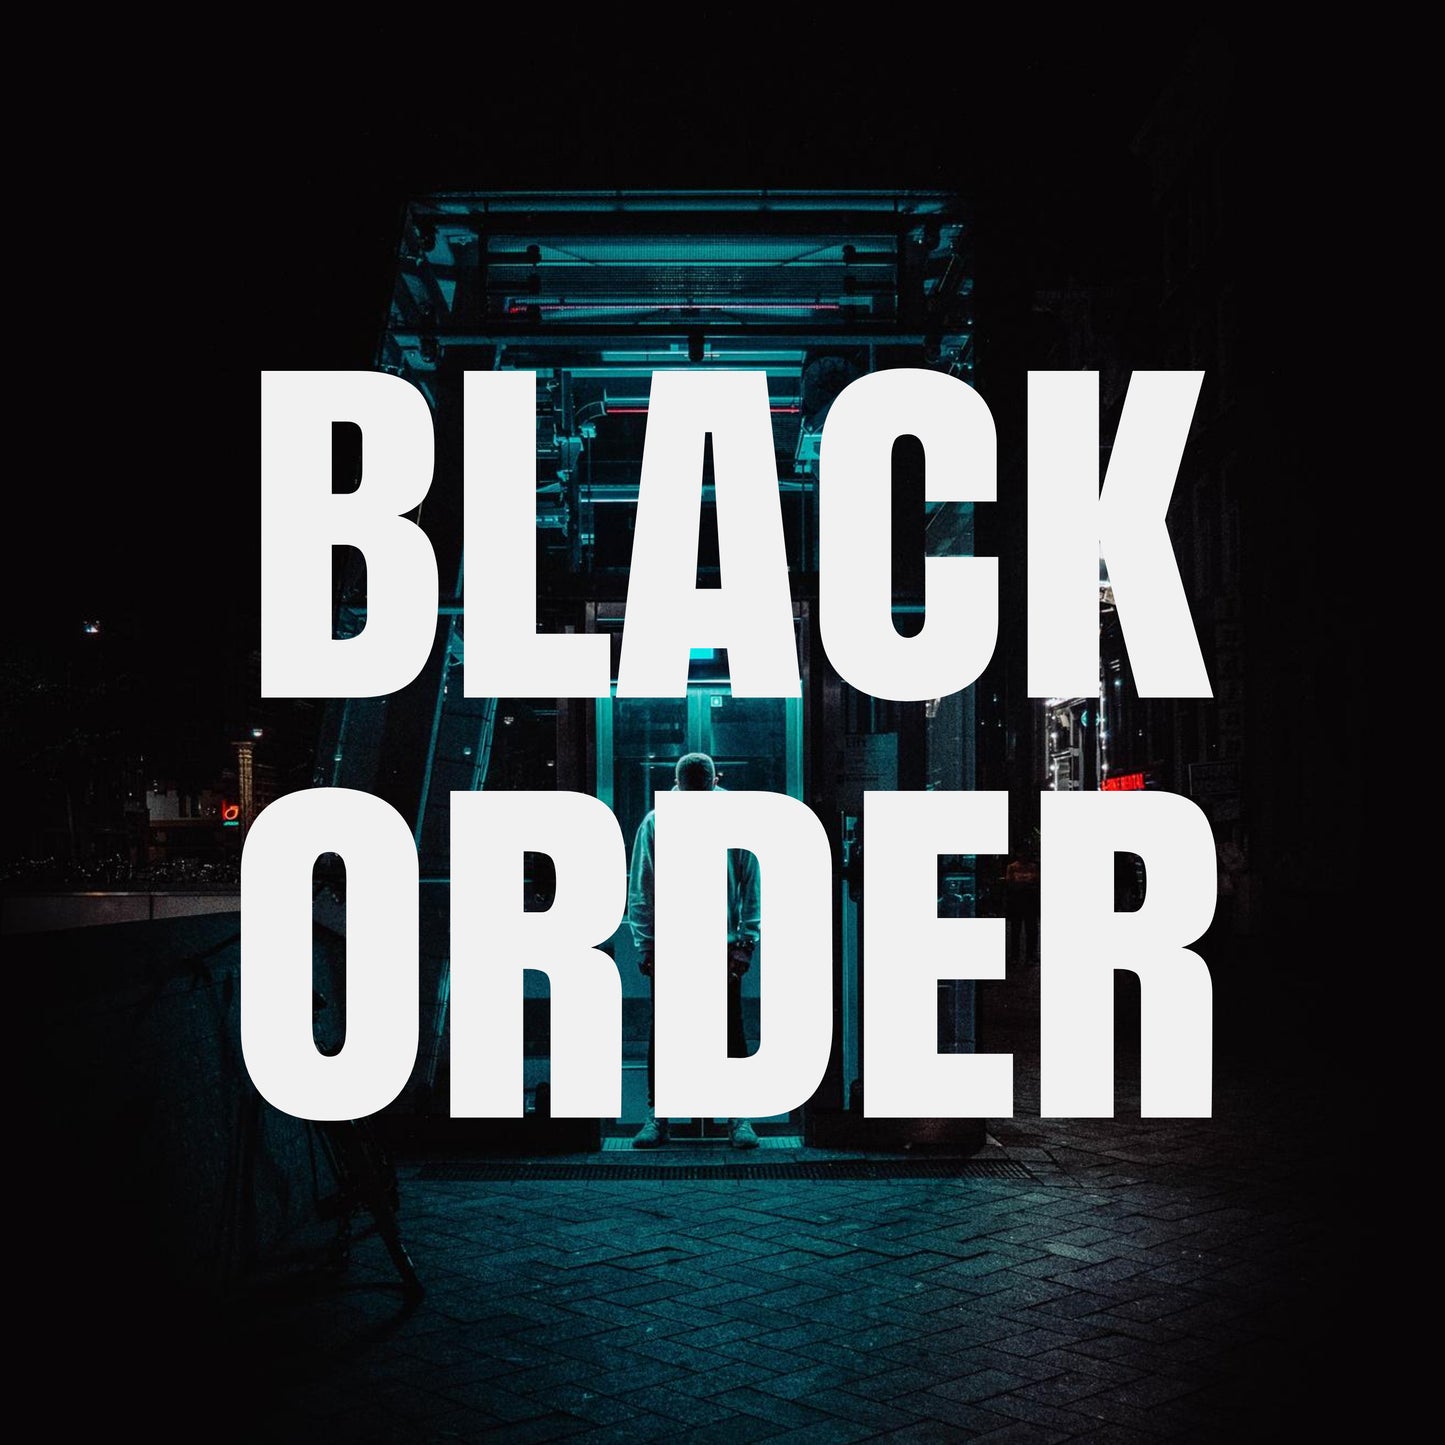 Orden negra